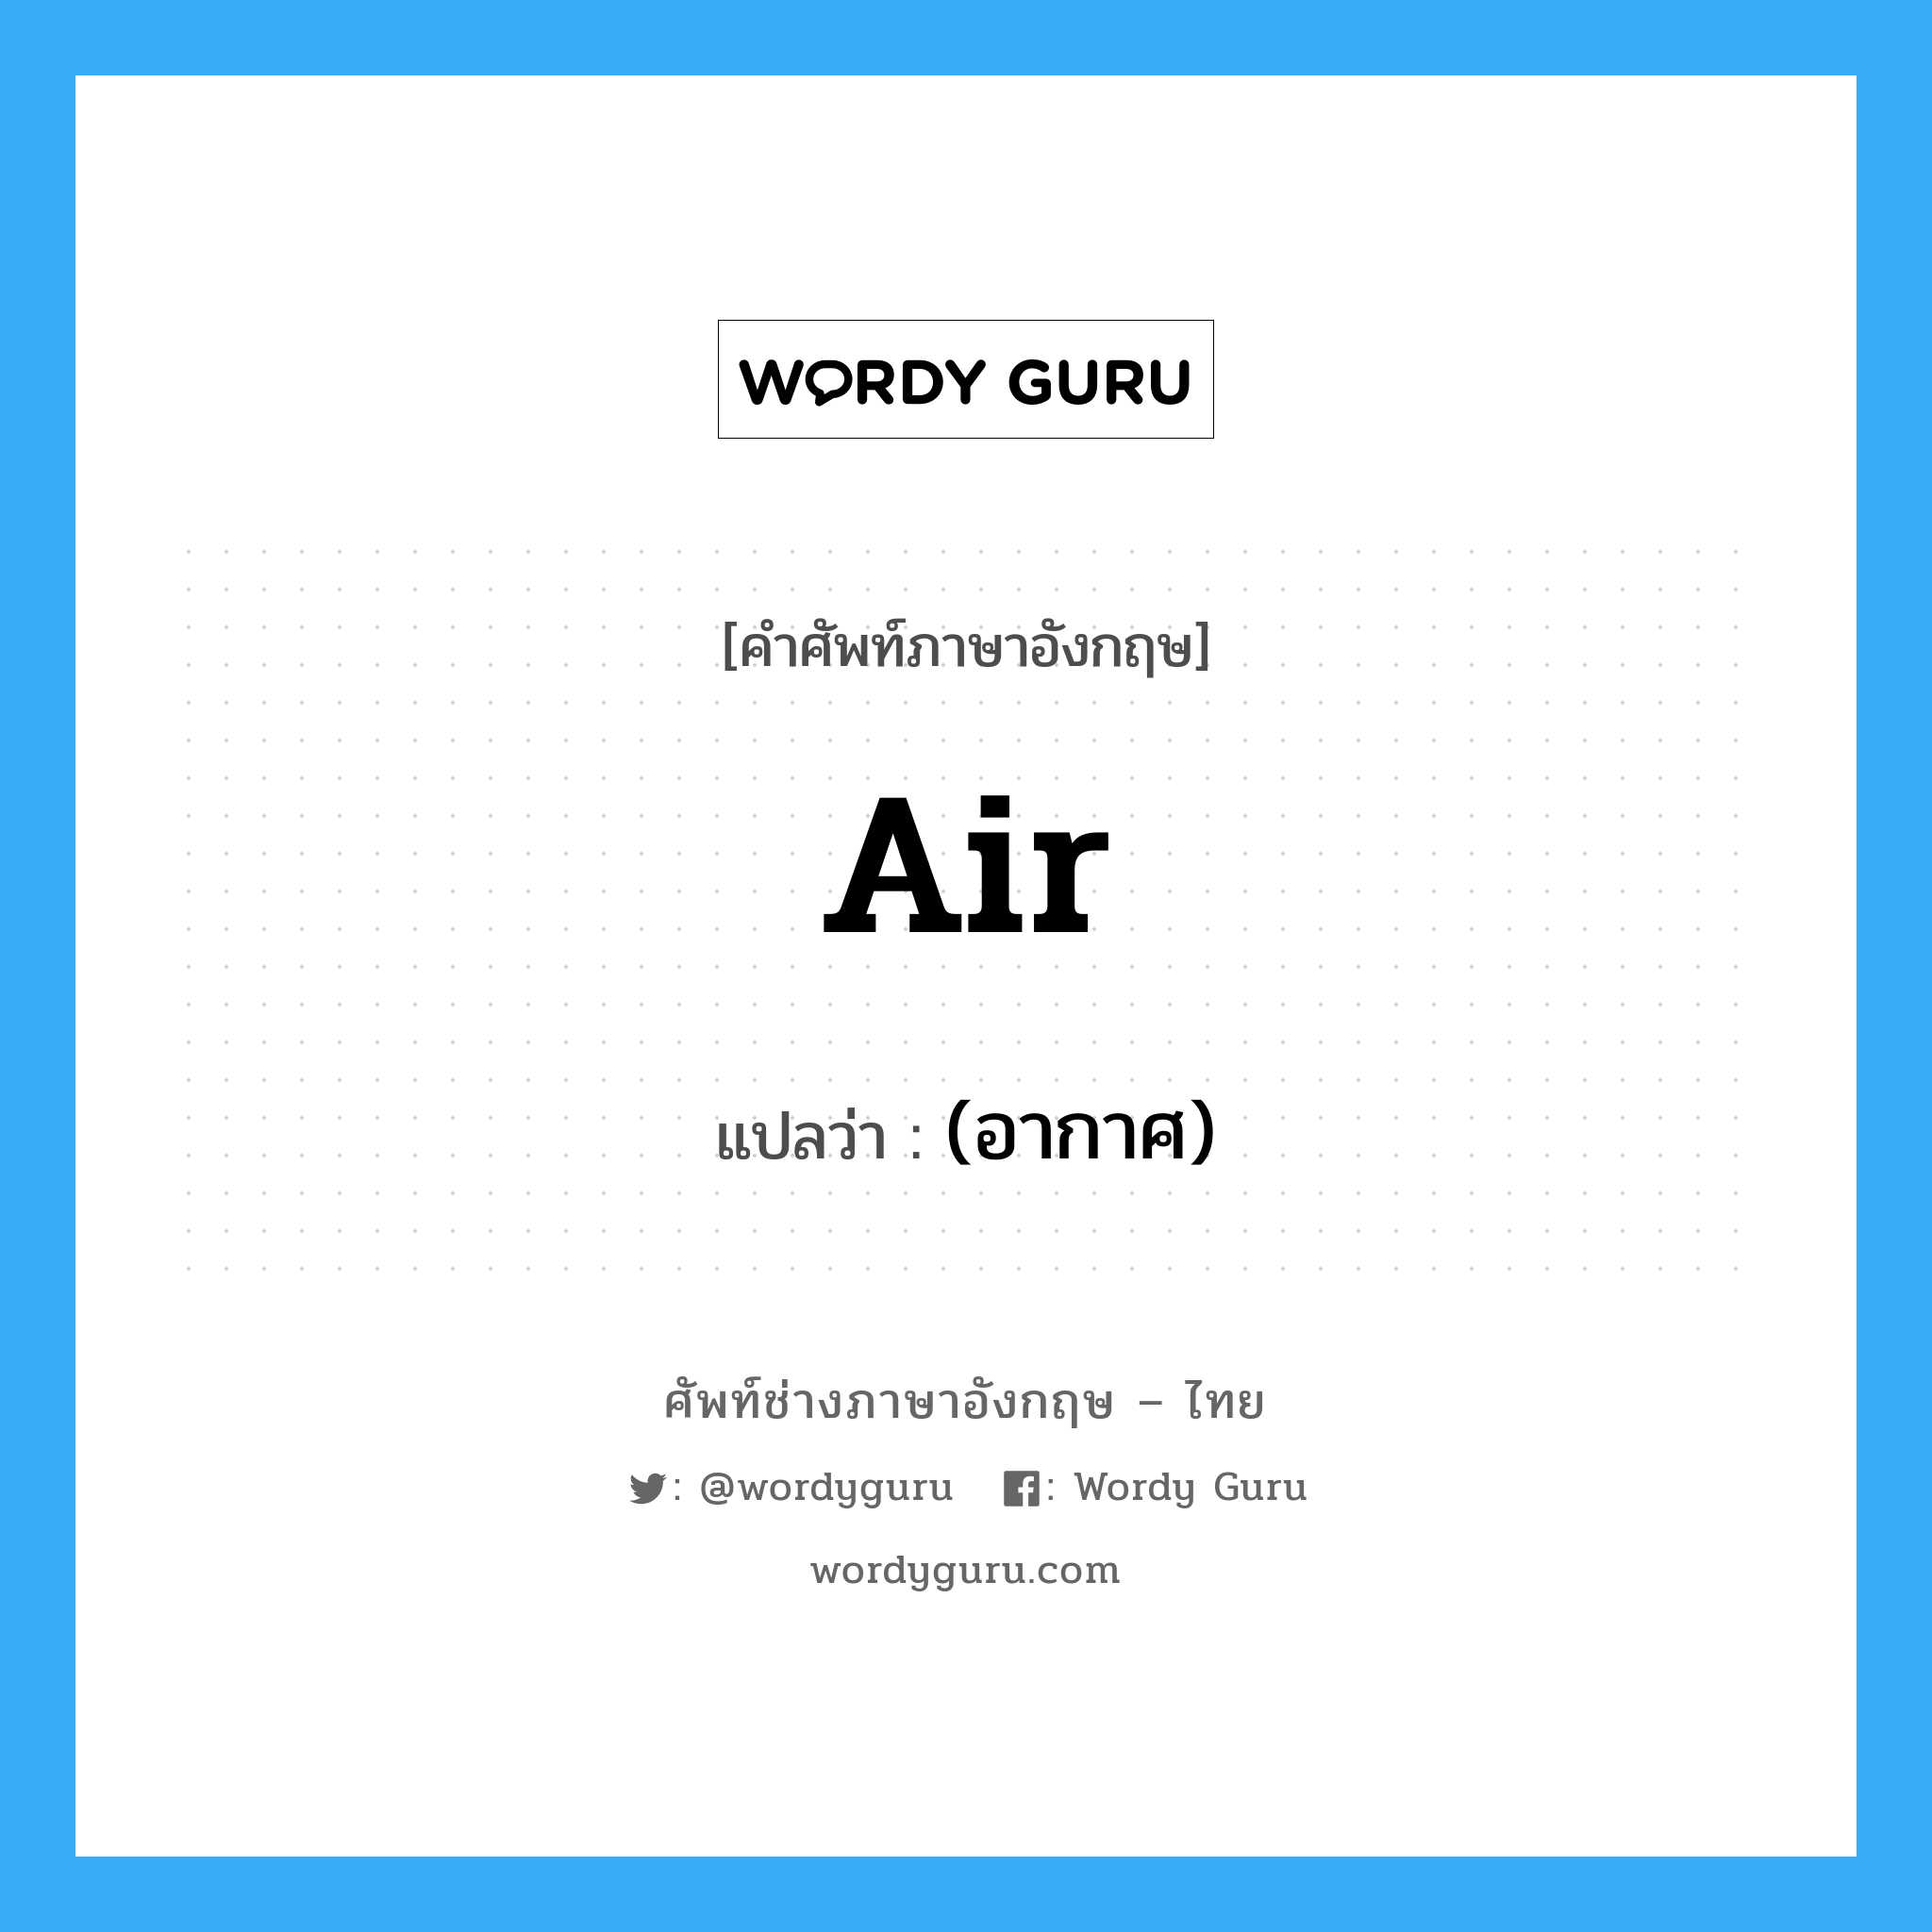 (อากาศ) ภาษาอังกฤษ?, คำศัพท์ช่างภาษาอังกฤษ - ไทย (อากาศ) คำศัพท์ภาษาอังกฤษ (อากาศ) แปลว่า air